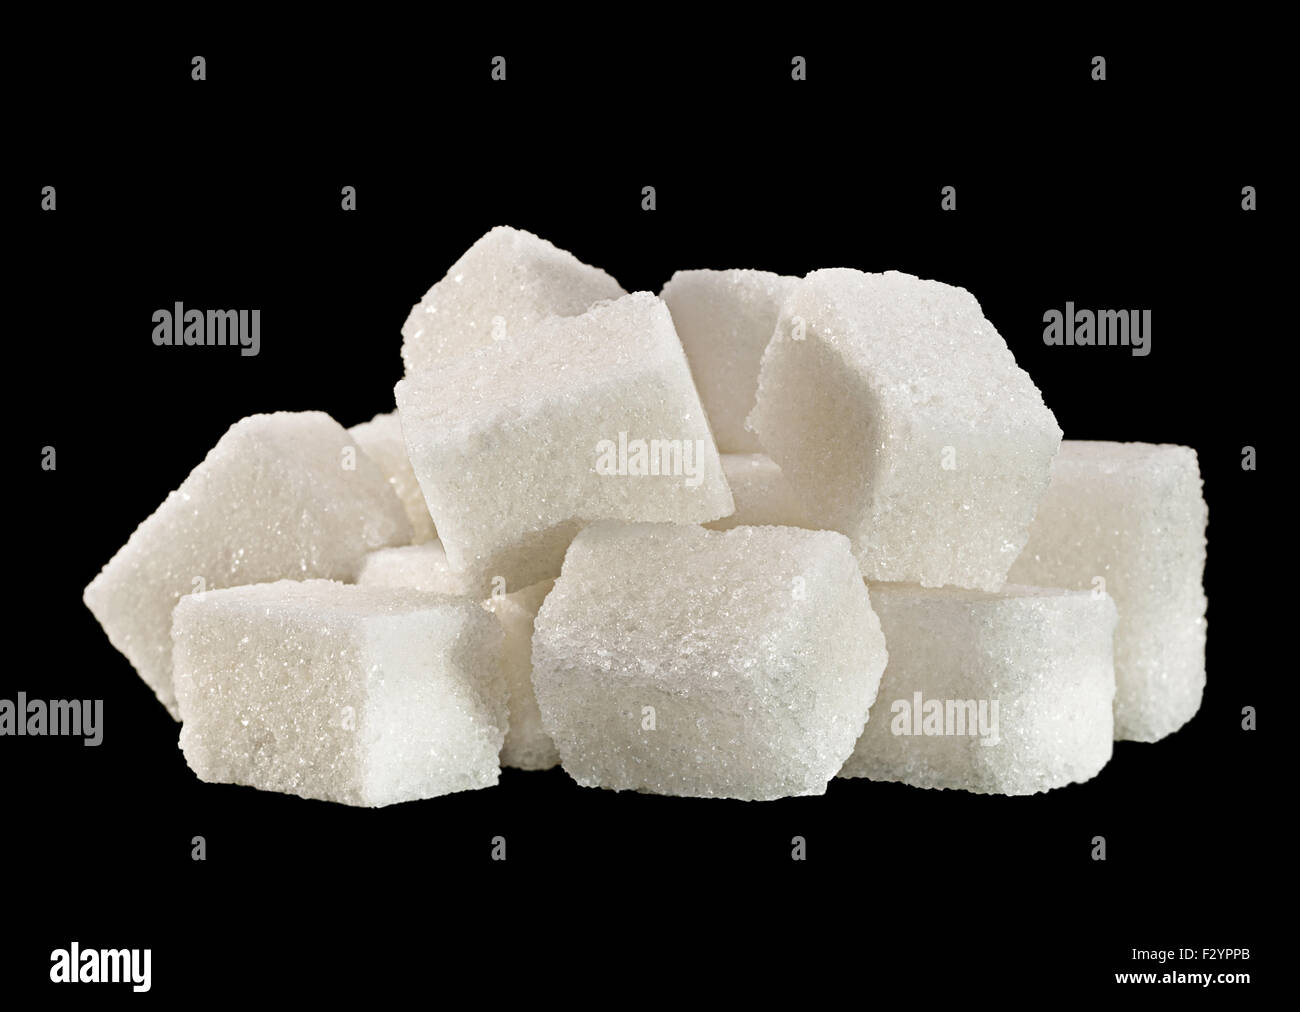 lump sugar cube isolated on black background Stock Photo - Alamy